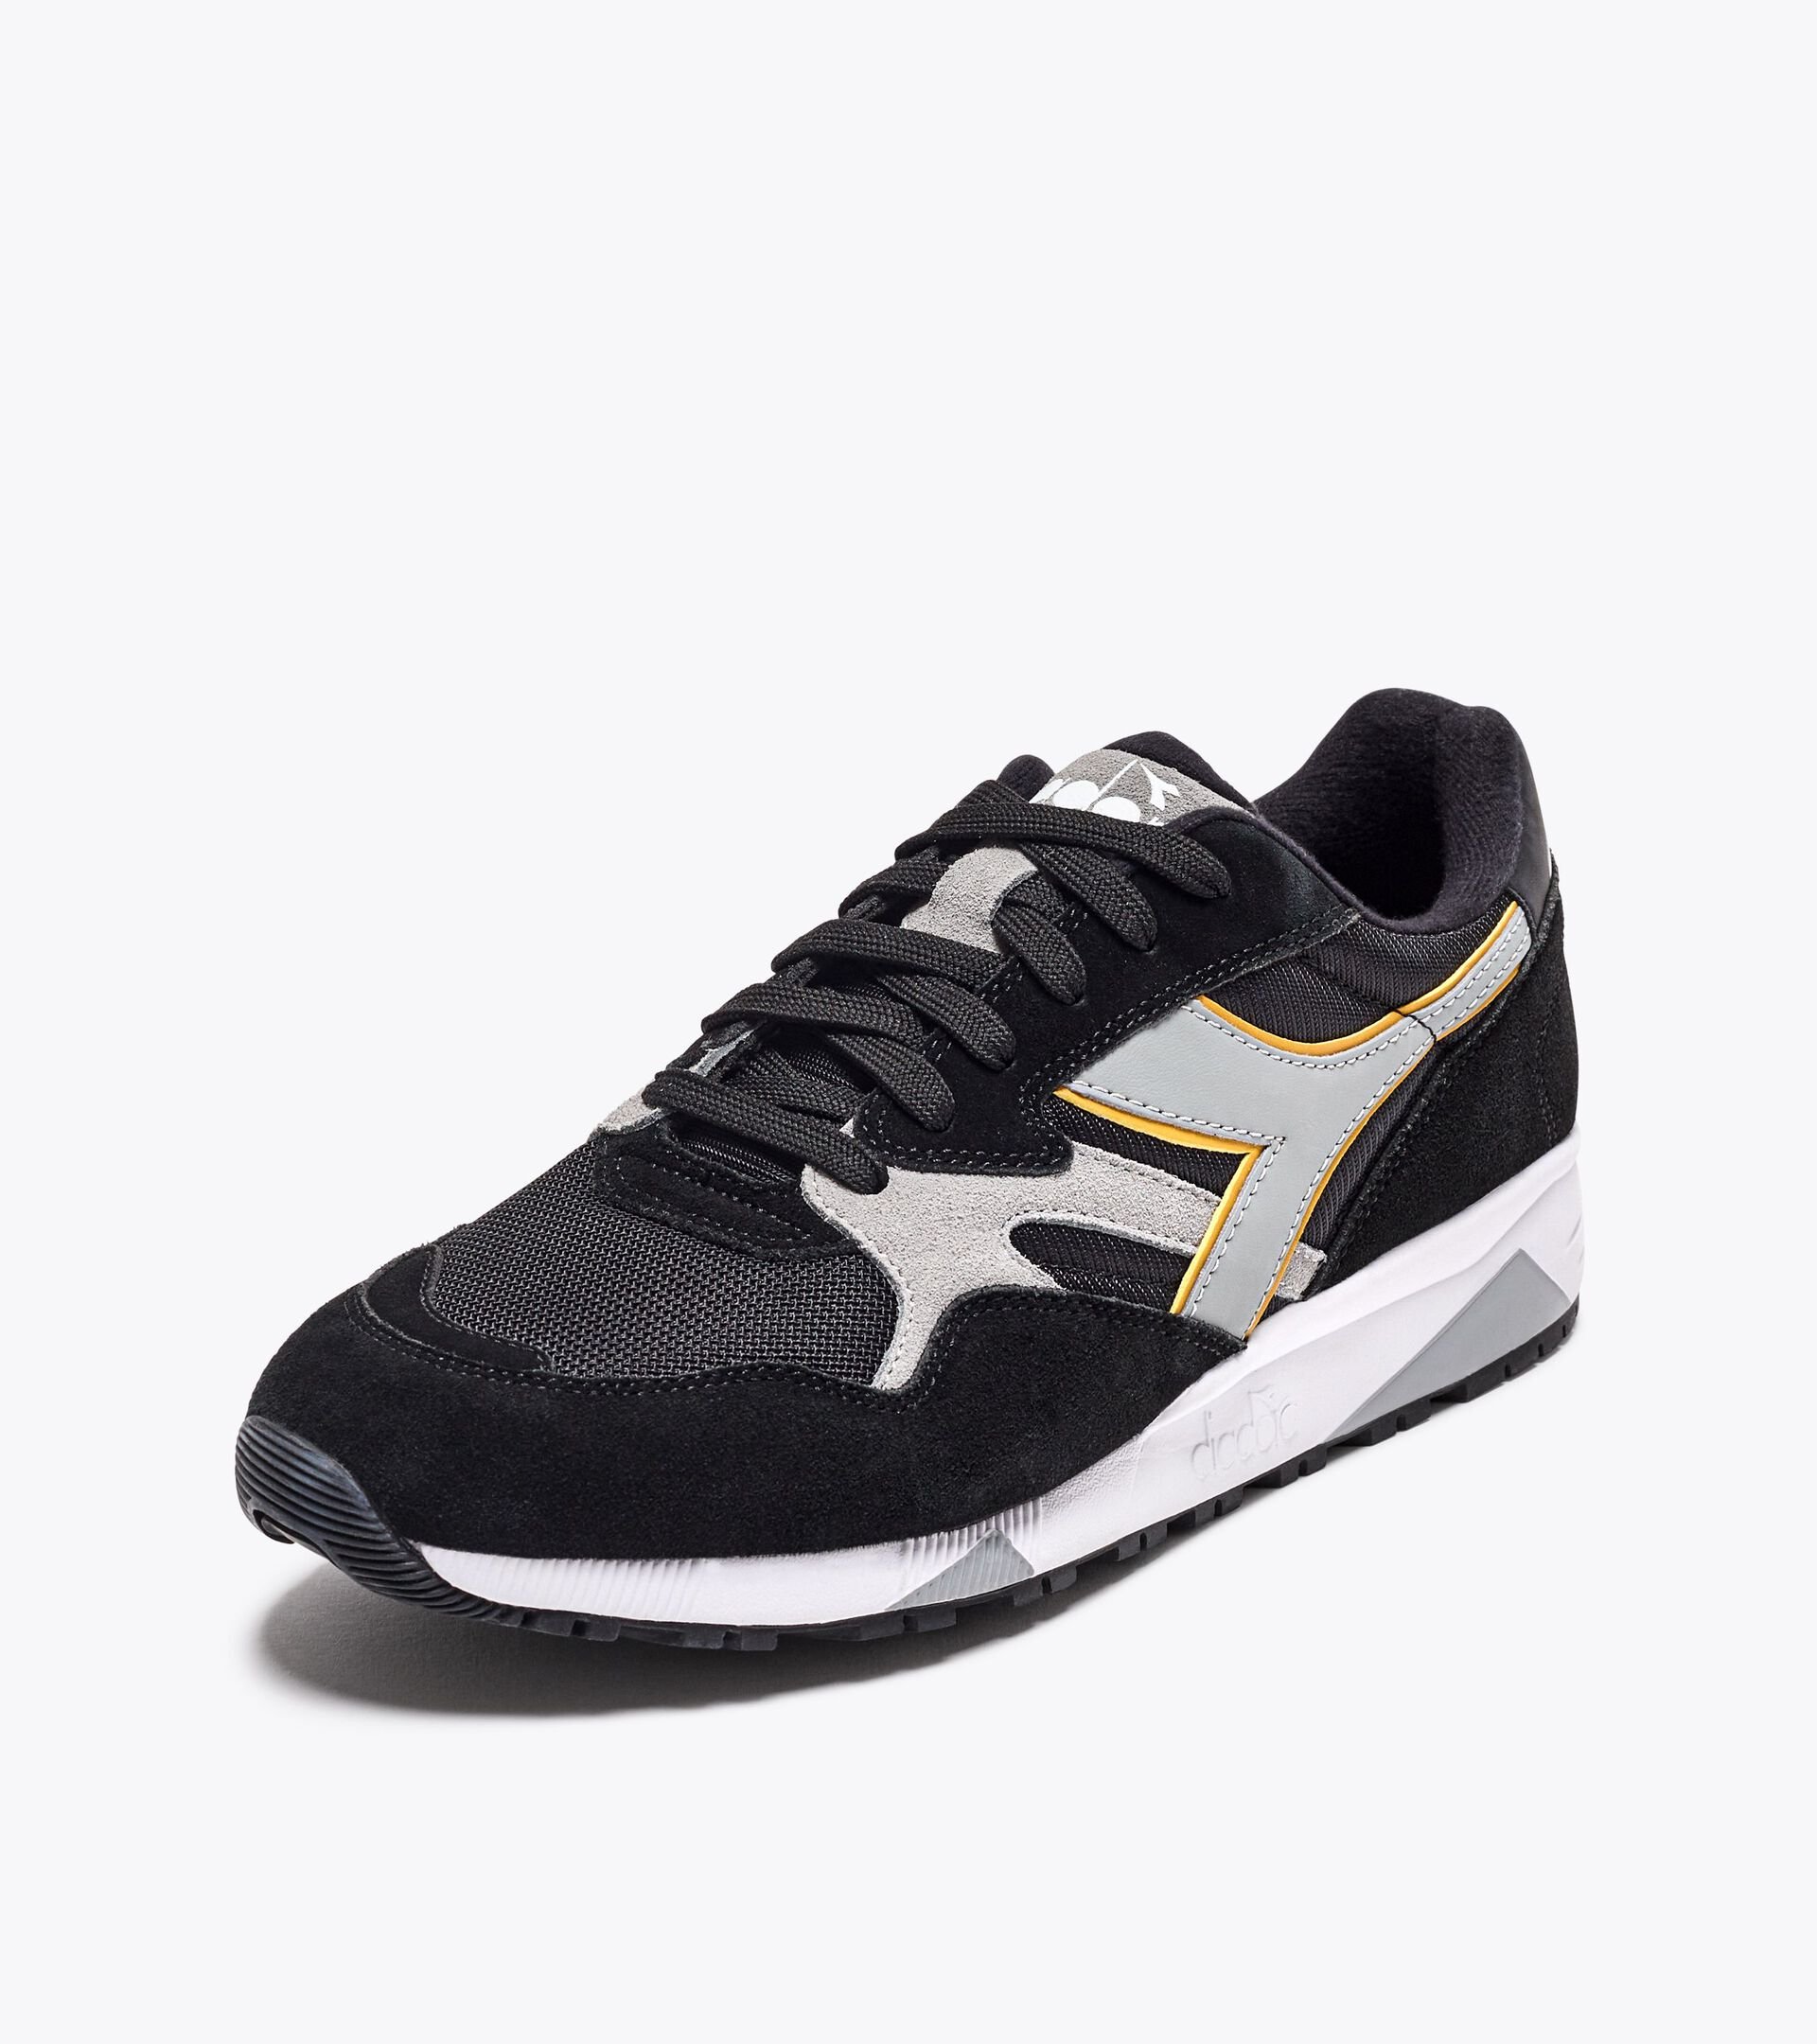 Sporty sneakers - Gender neutral N902 BLACK/BLACK - Diadora